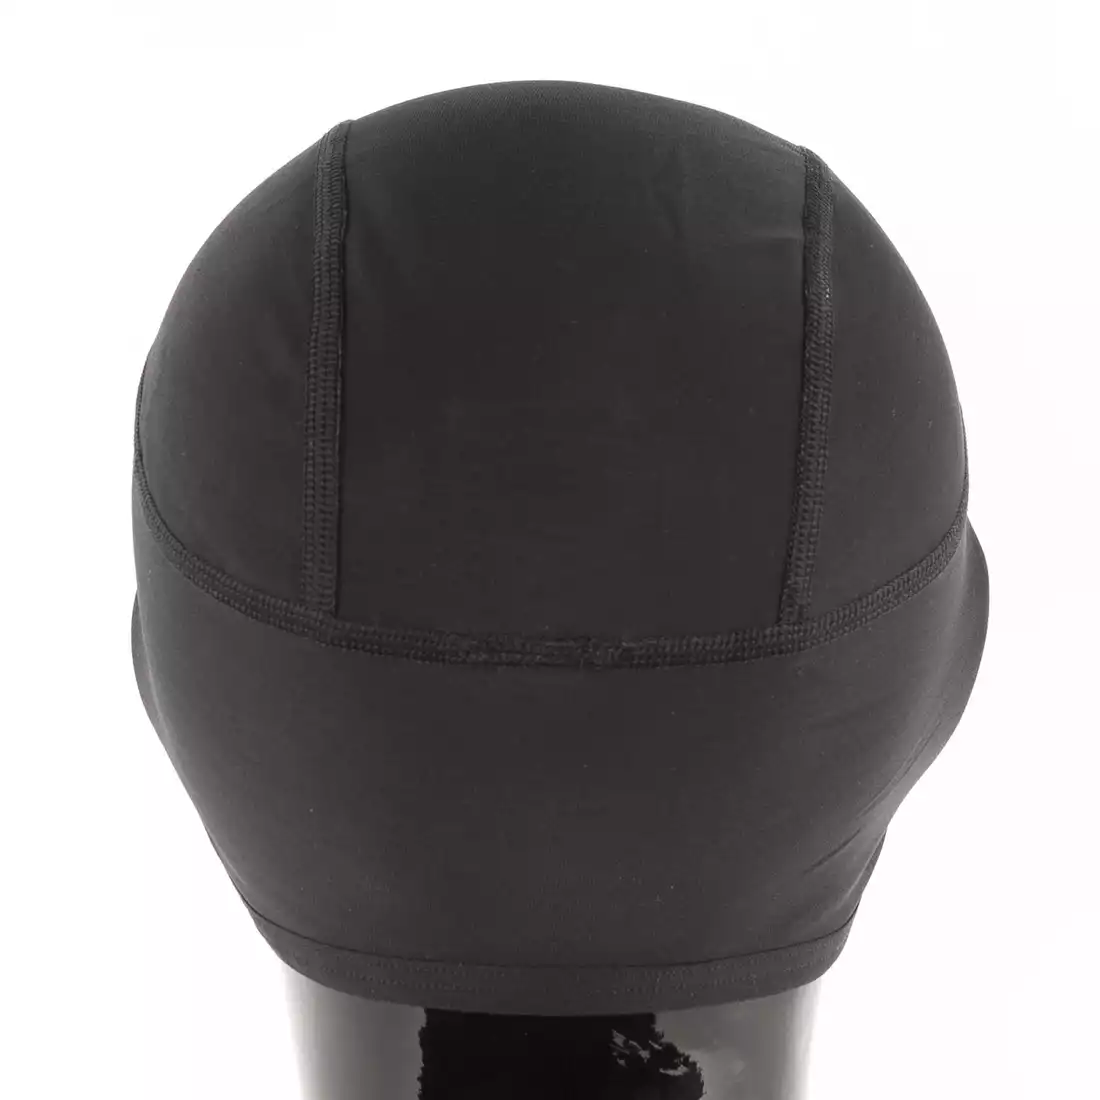 KAYMAQ zimowa czapka rowerowa pod kask, membrana Zero Wind, czarna